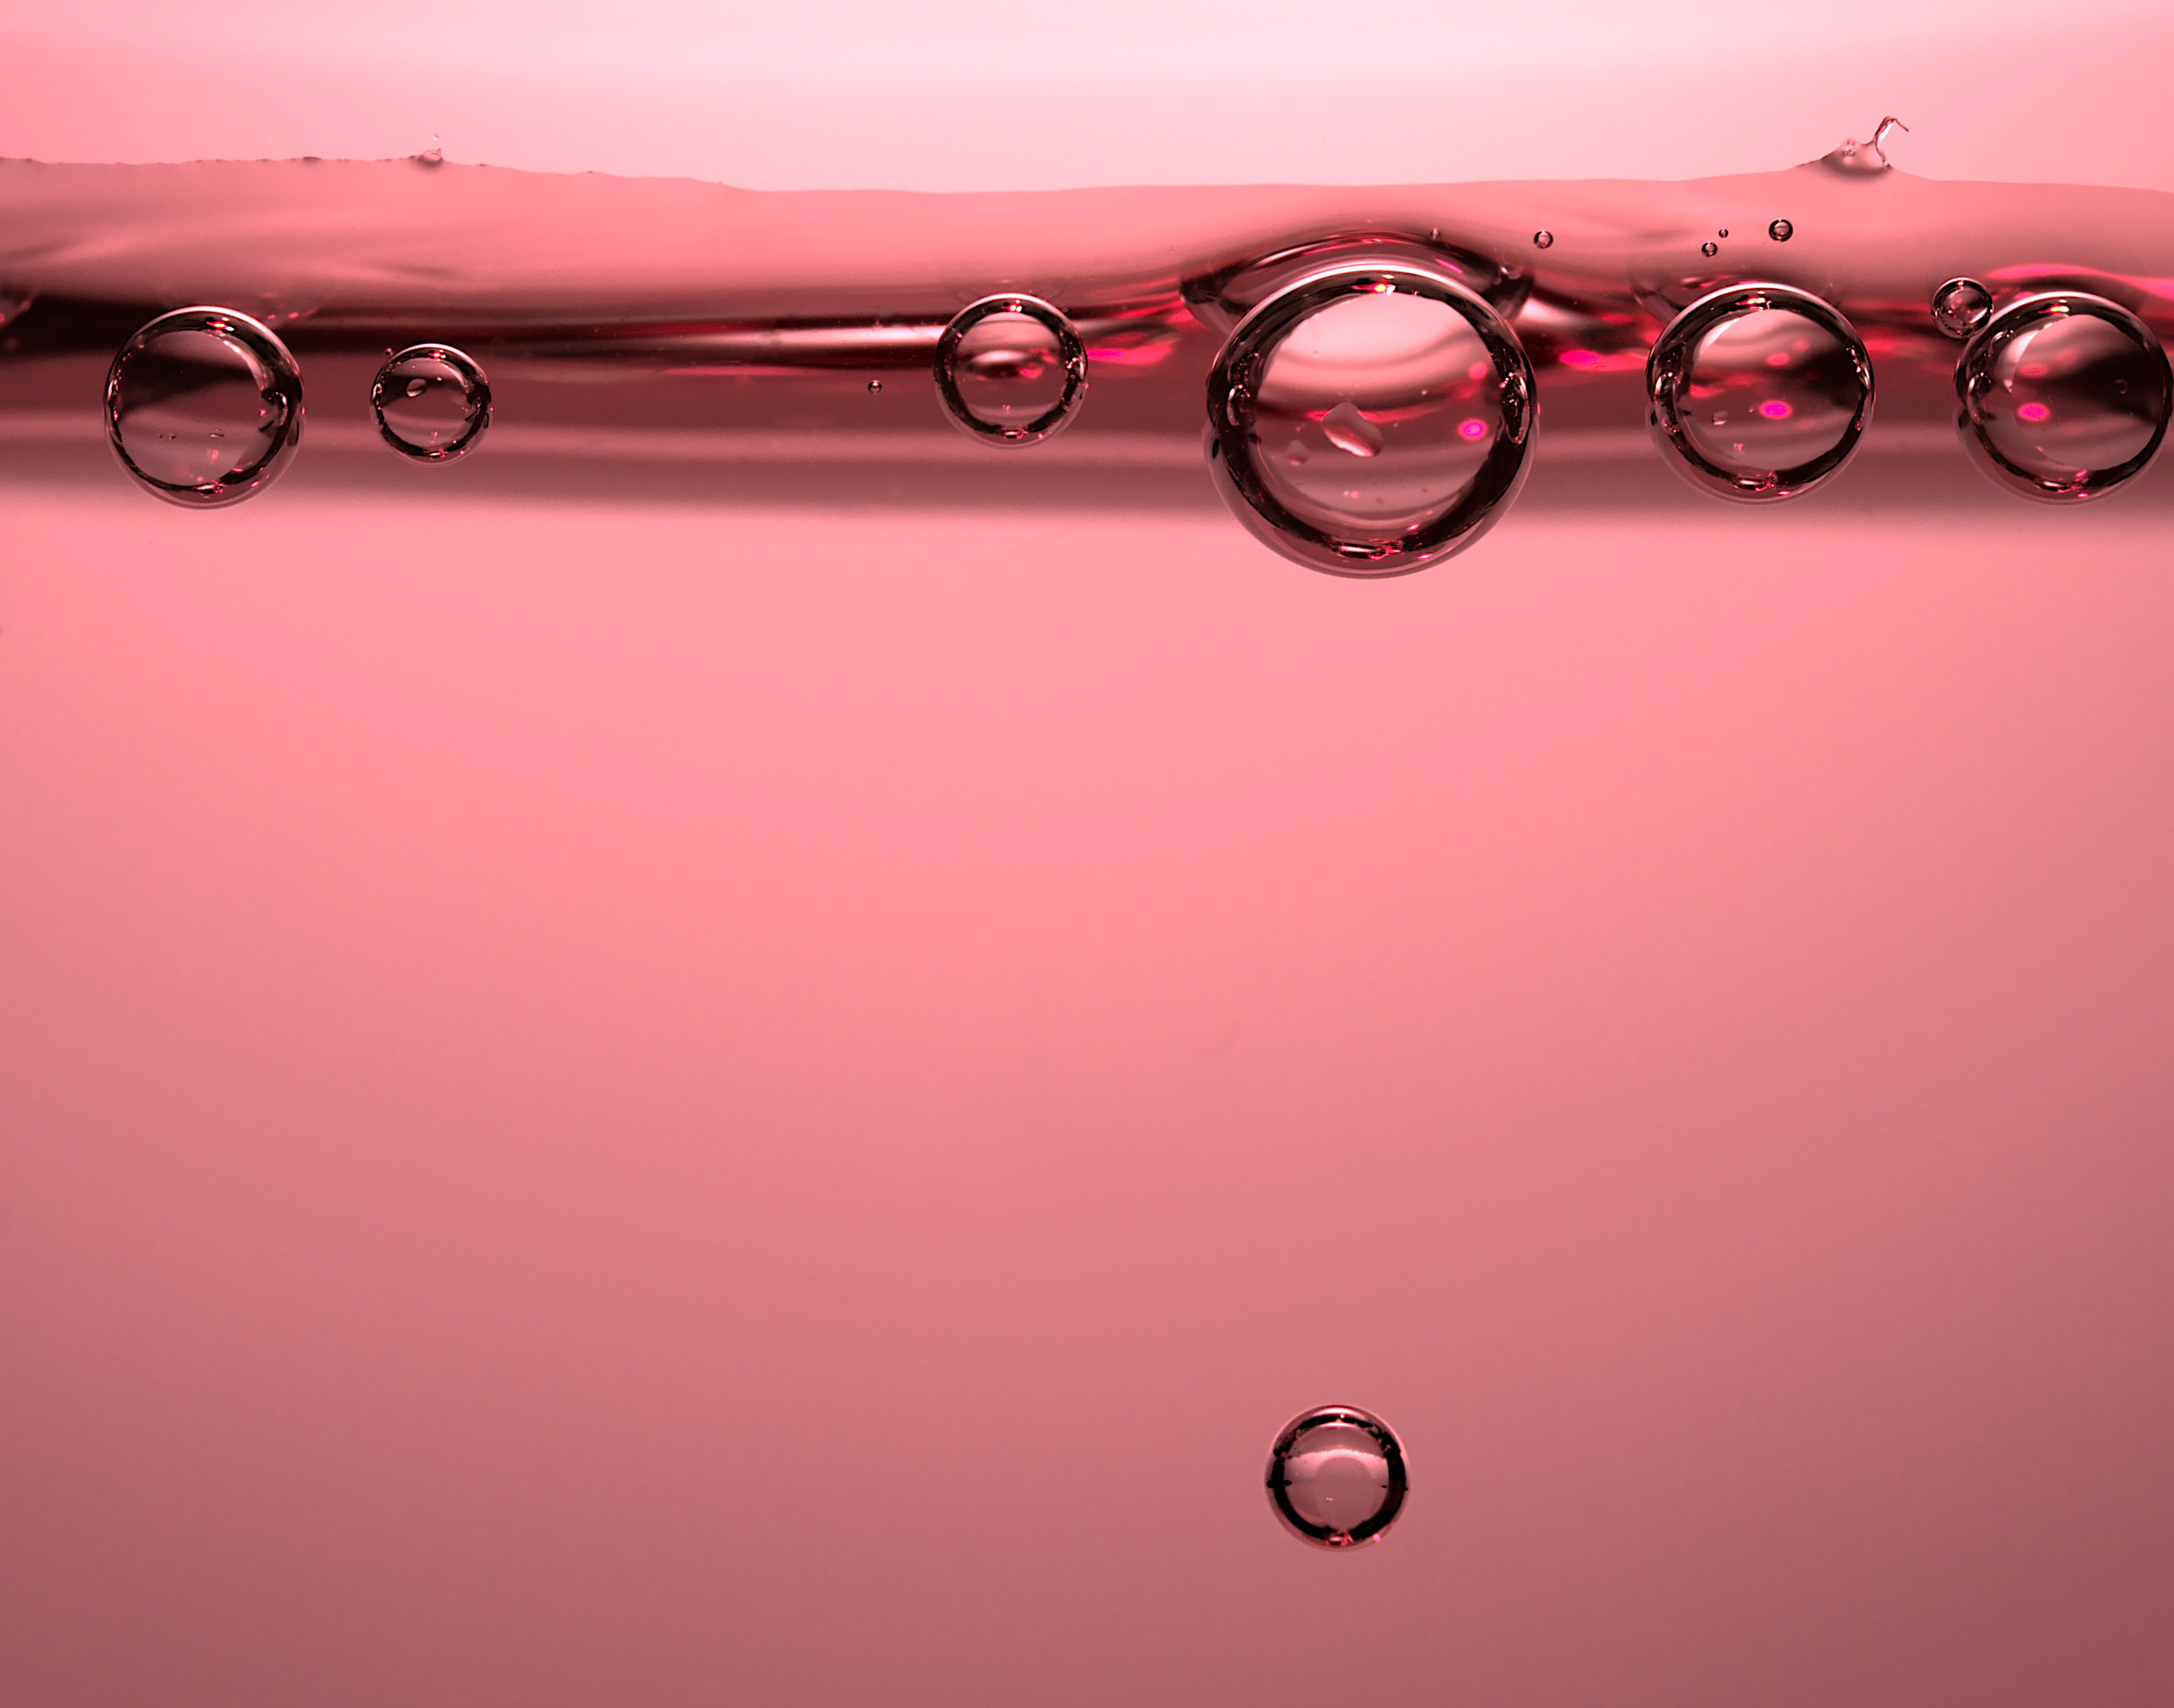 bubbles, pink, macro, liquid